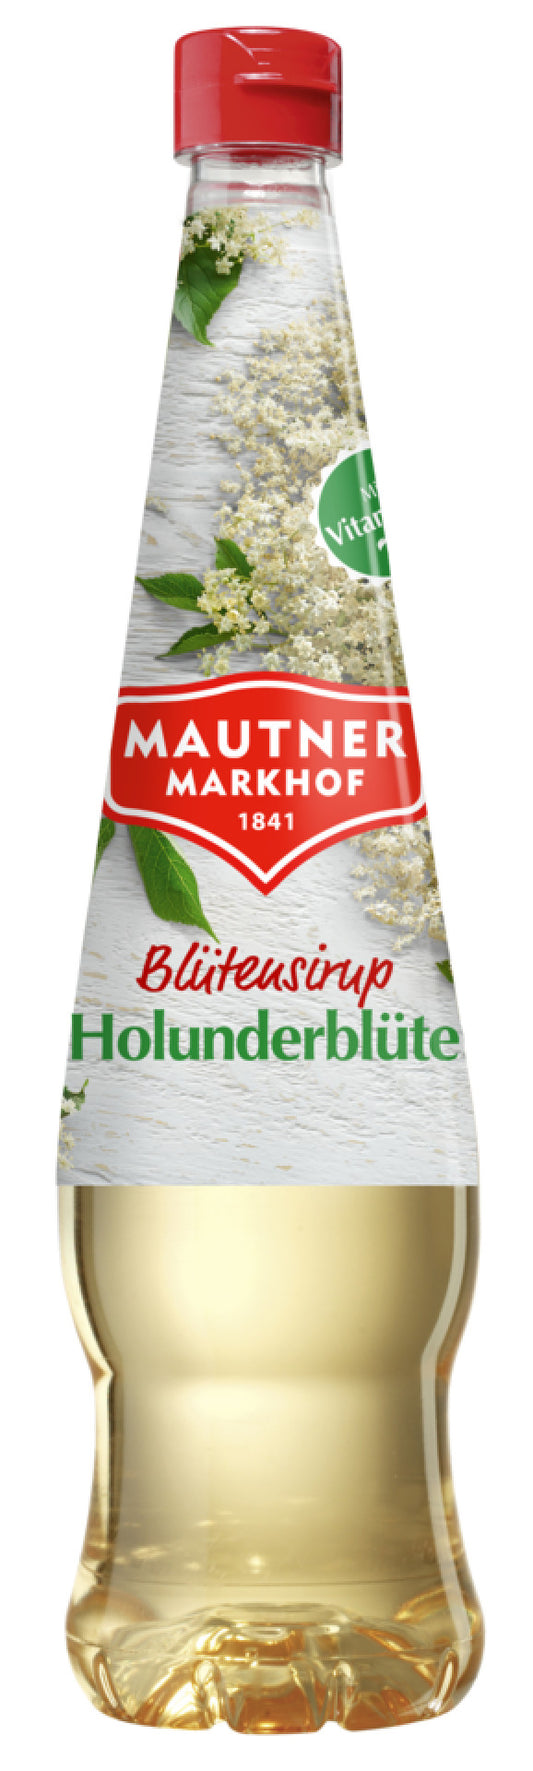 Mautner Markhof Sirup Holunderblüte